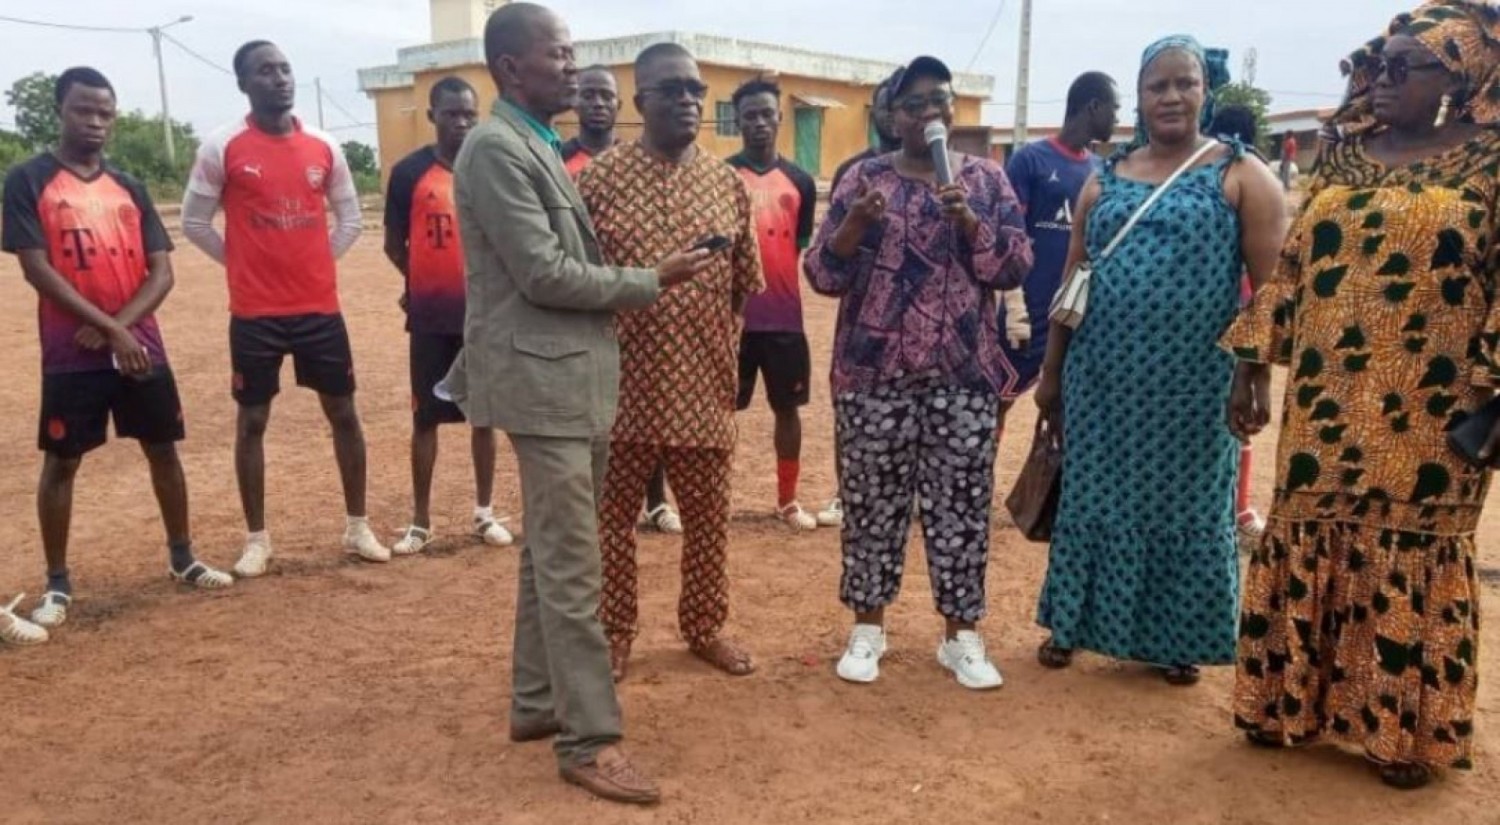 Côte d'Ivoire : Avec l'appui de l'honorable Assahoré, plusieurs jeunes participent à un tournoi à Bouaké de pour des vacances saines